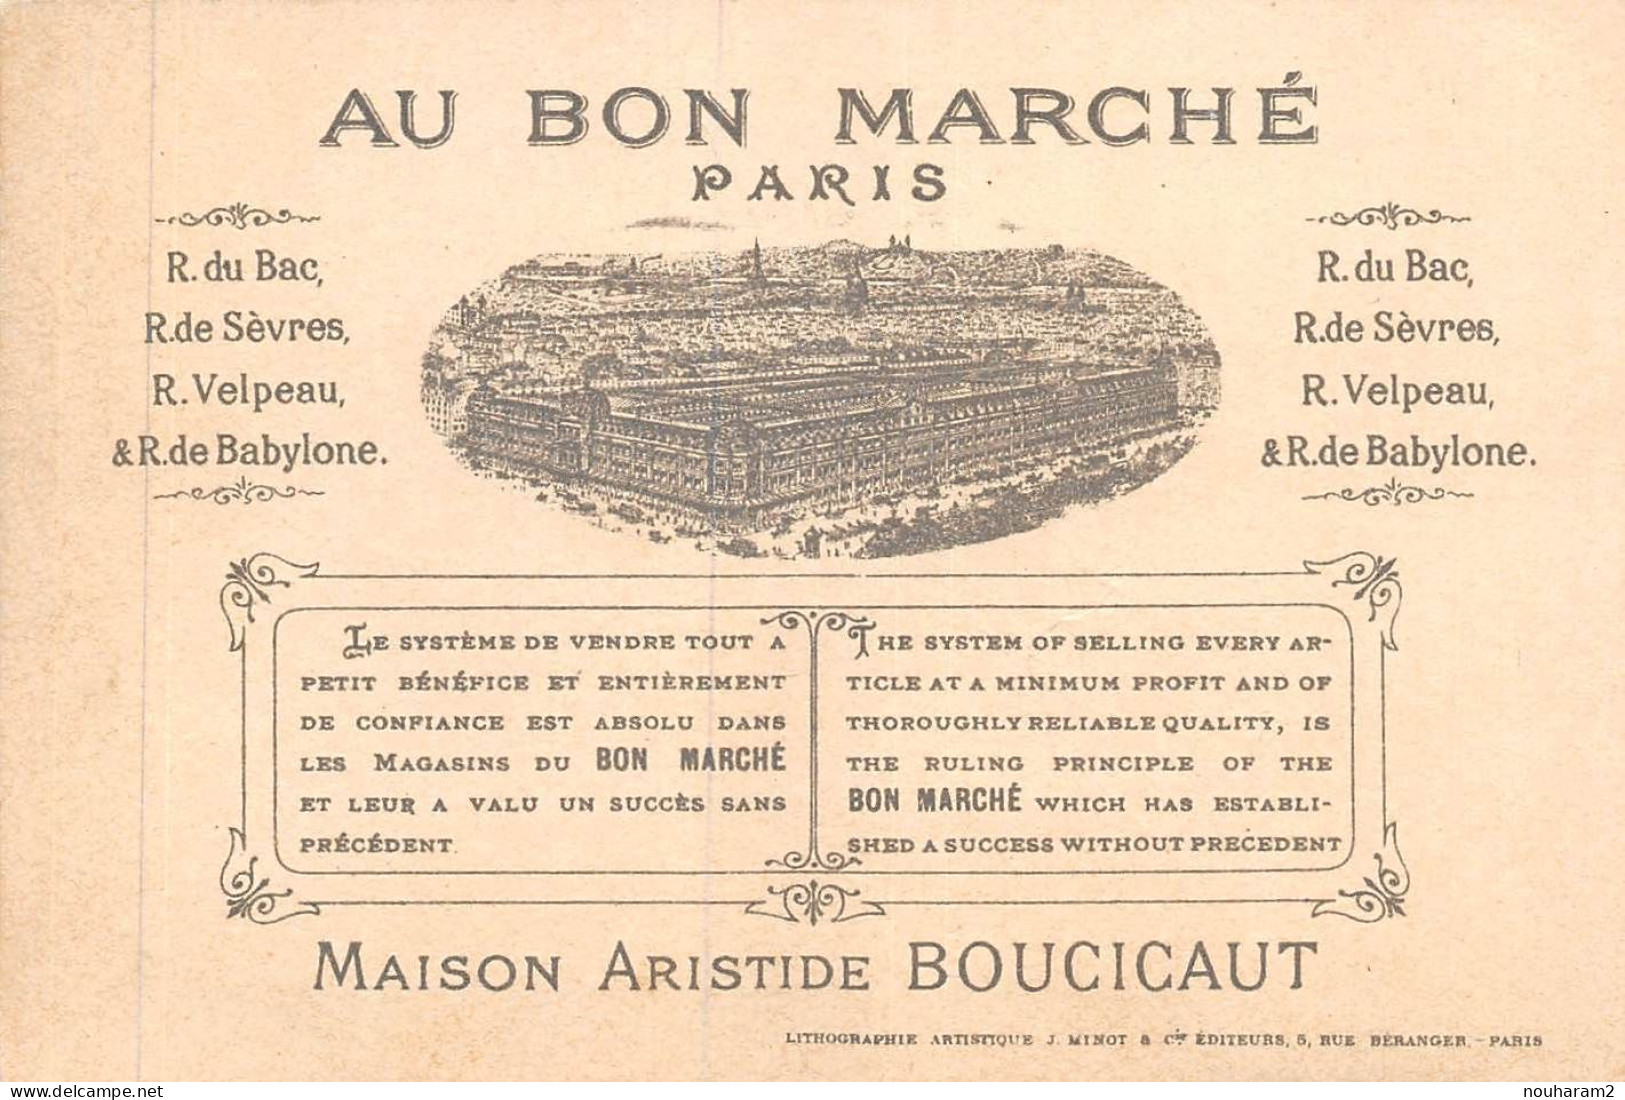 MA-2024-011. MAGASIN AU BON MARCHE PARIS. ARLEQUIN PIERROT CHAMPAGNE BOUCHON BOUM - Au Bon Marché